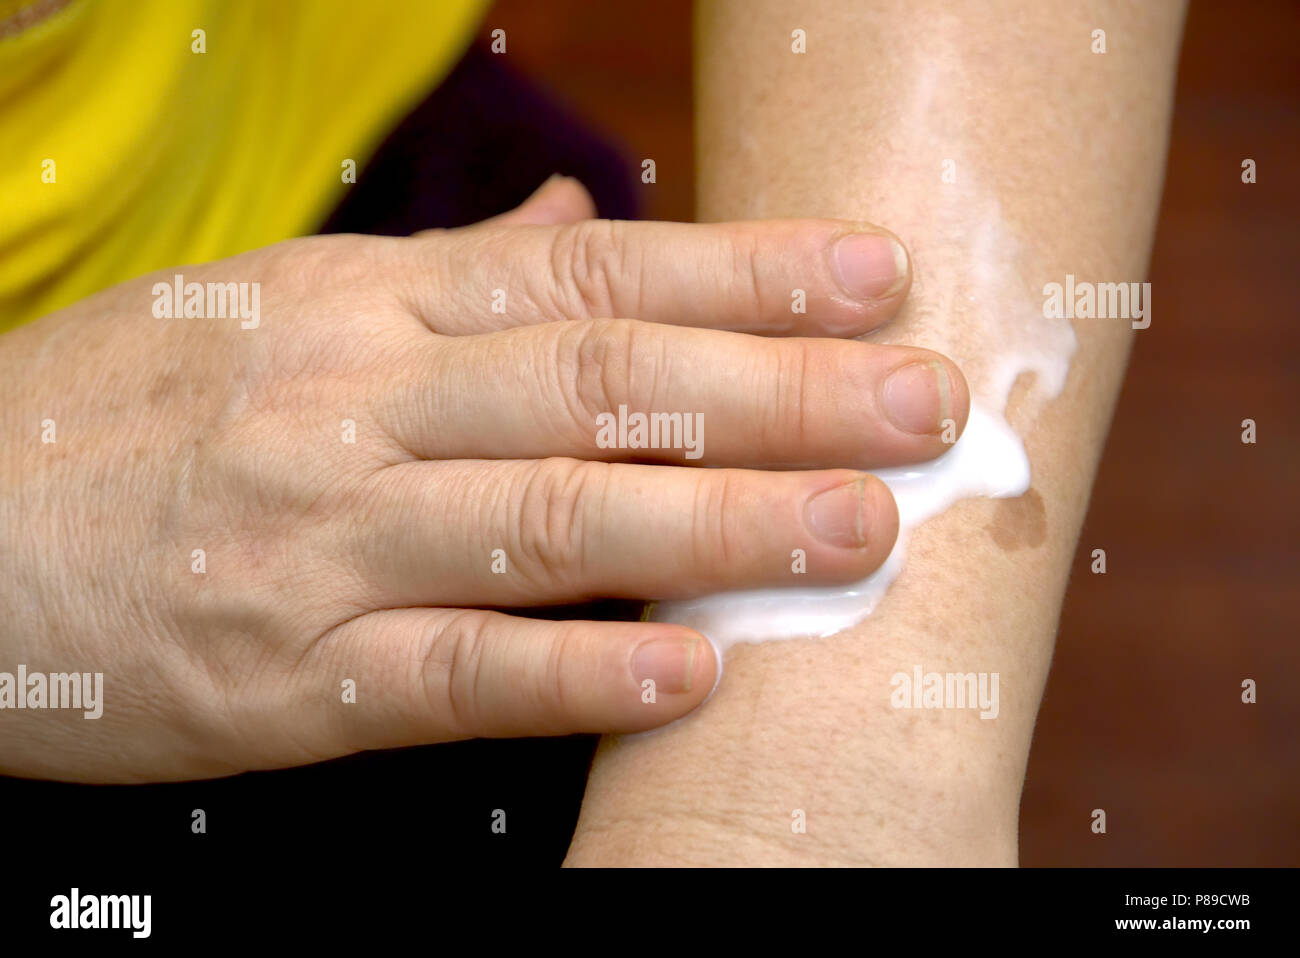 Las mujeres aplicar crema en el brazo. Foto de stock